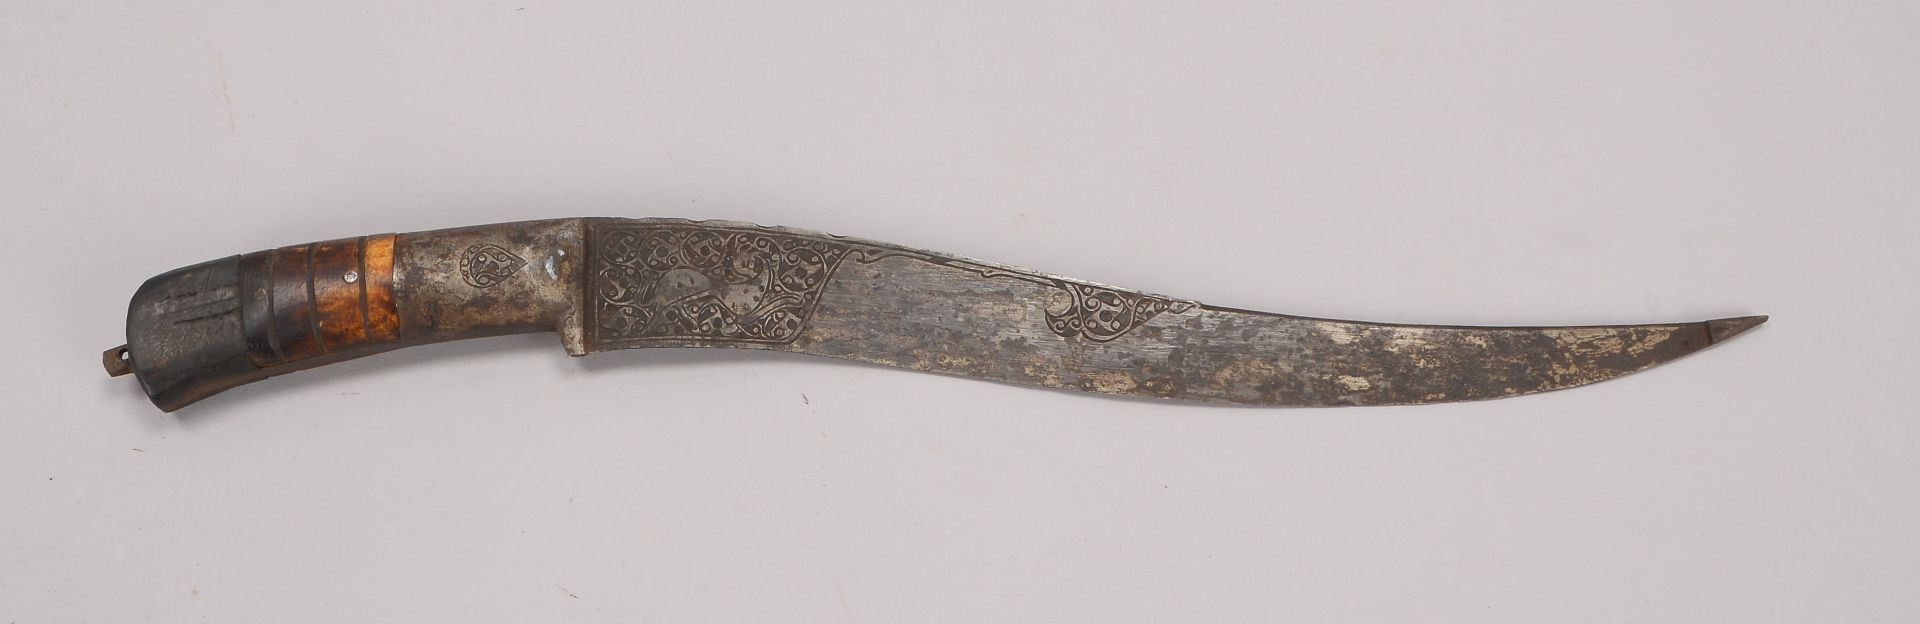 Dolch (Iran), geschwungene Klinge mit ornamentalem Reliefdekor, Griff partiell mit Knochen staffiert - Image 2 of 3